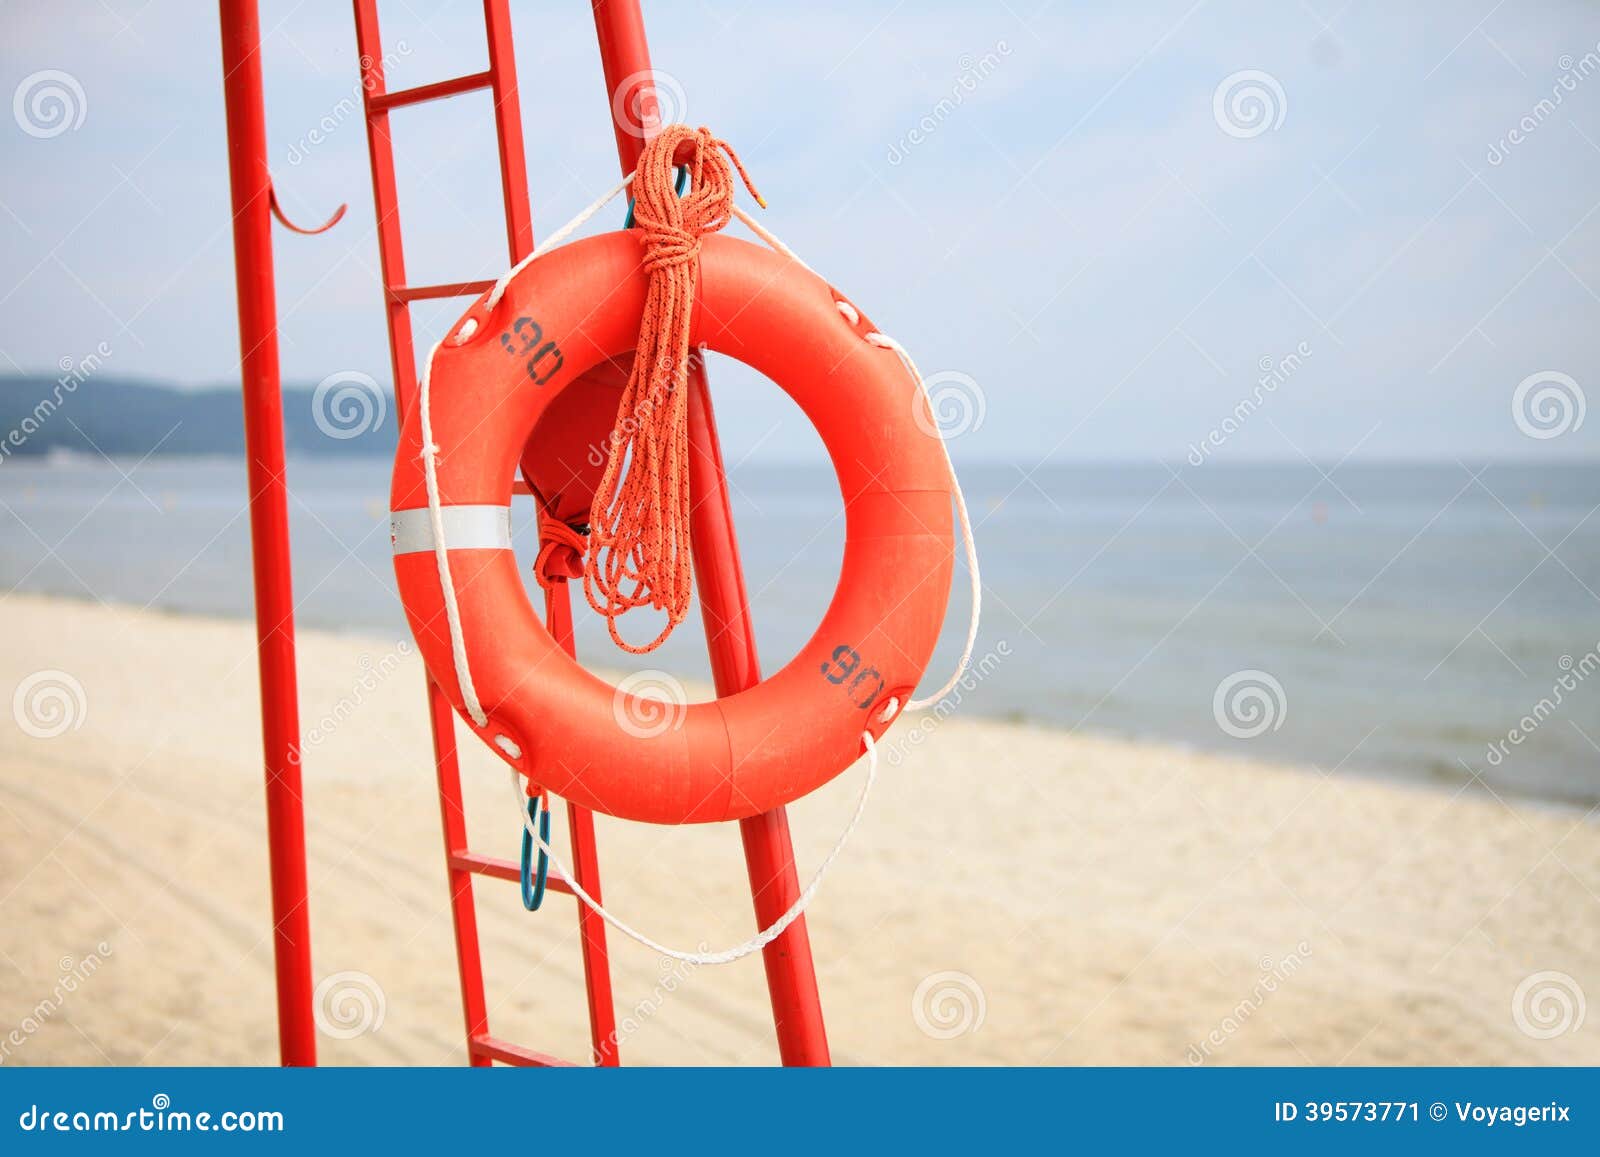 Пляжный спасатель. Спасательный инвентарь на пляже. Спасатель на пляже. Спасательный круг.